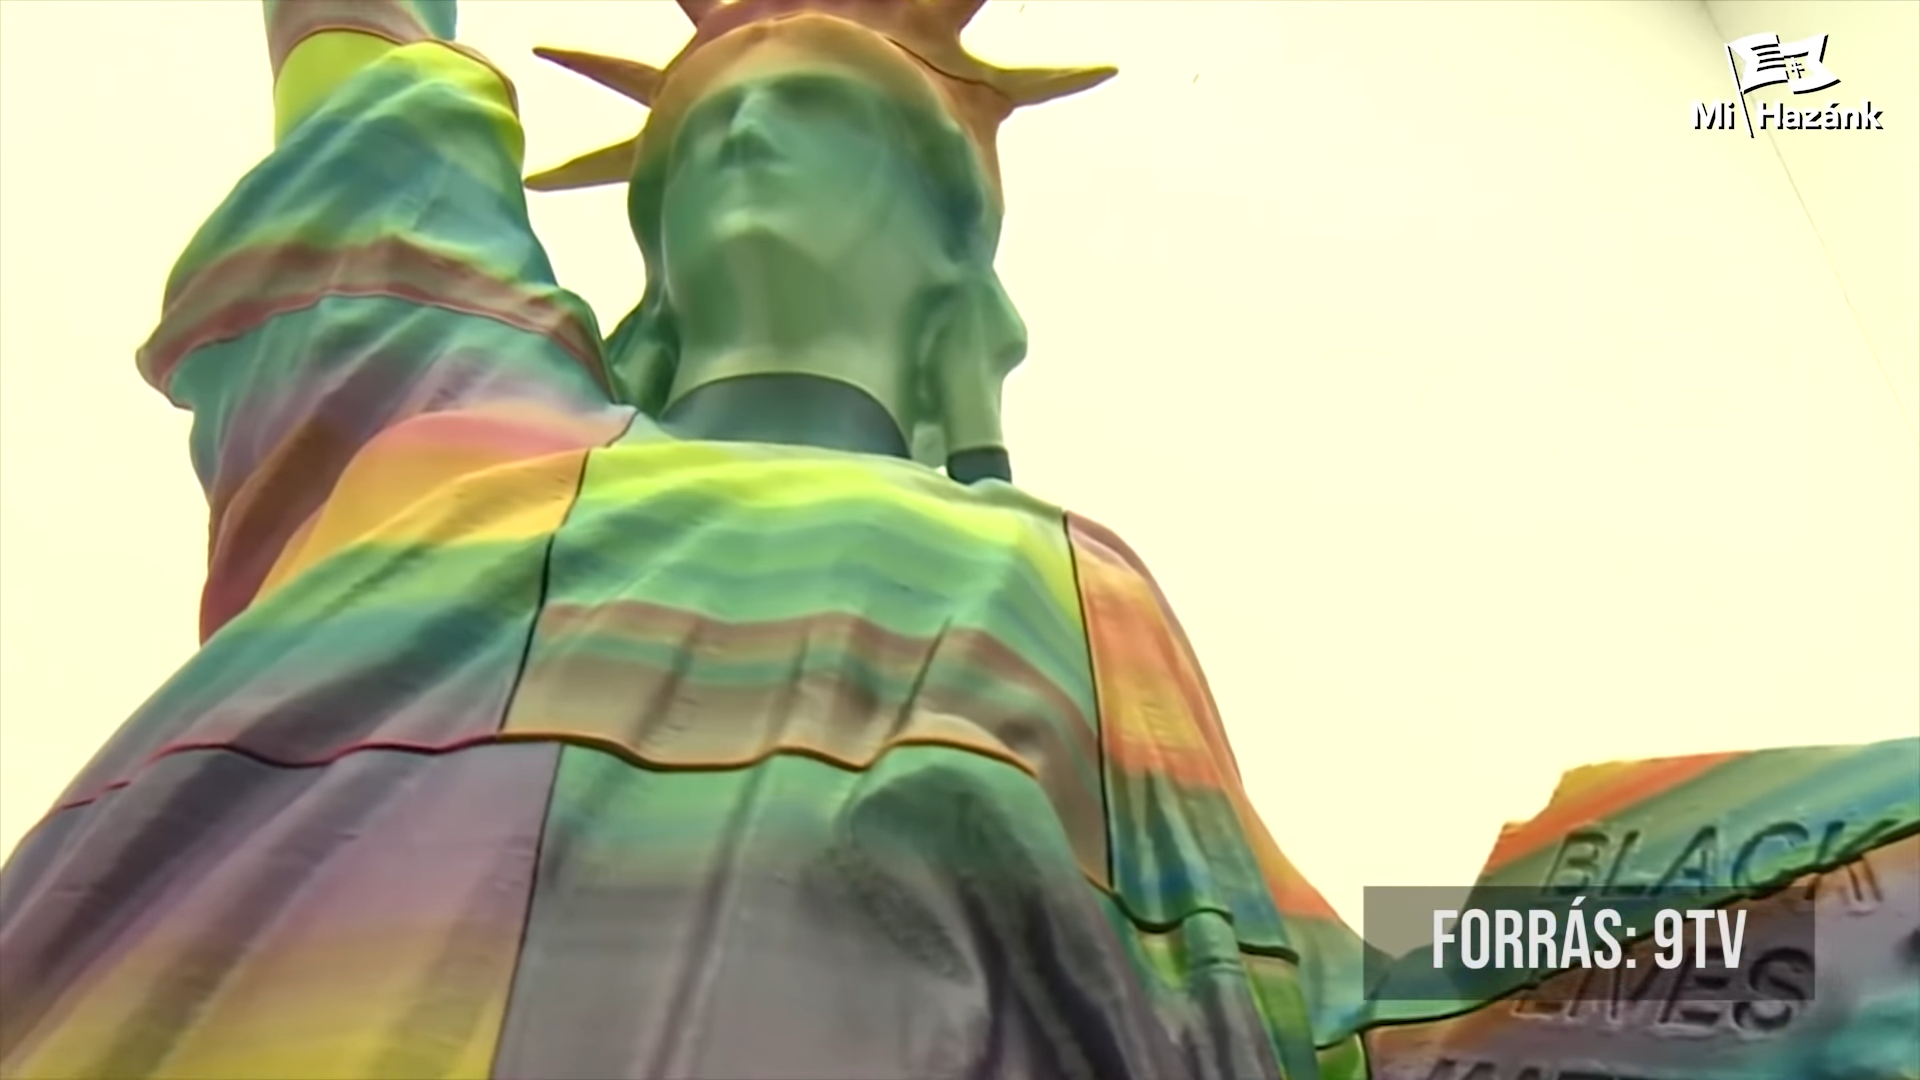 Rechtsextremisten bauen Barrikade um die regenbogenfarbene Statue